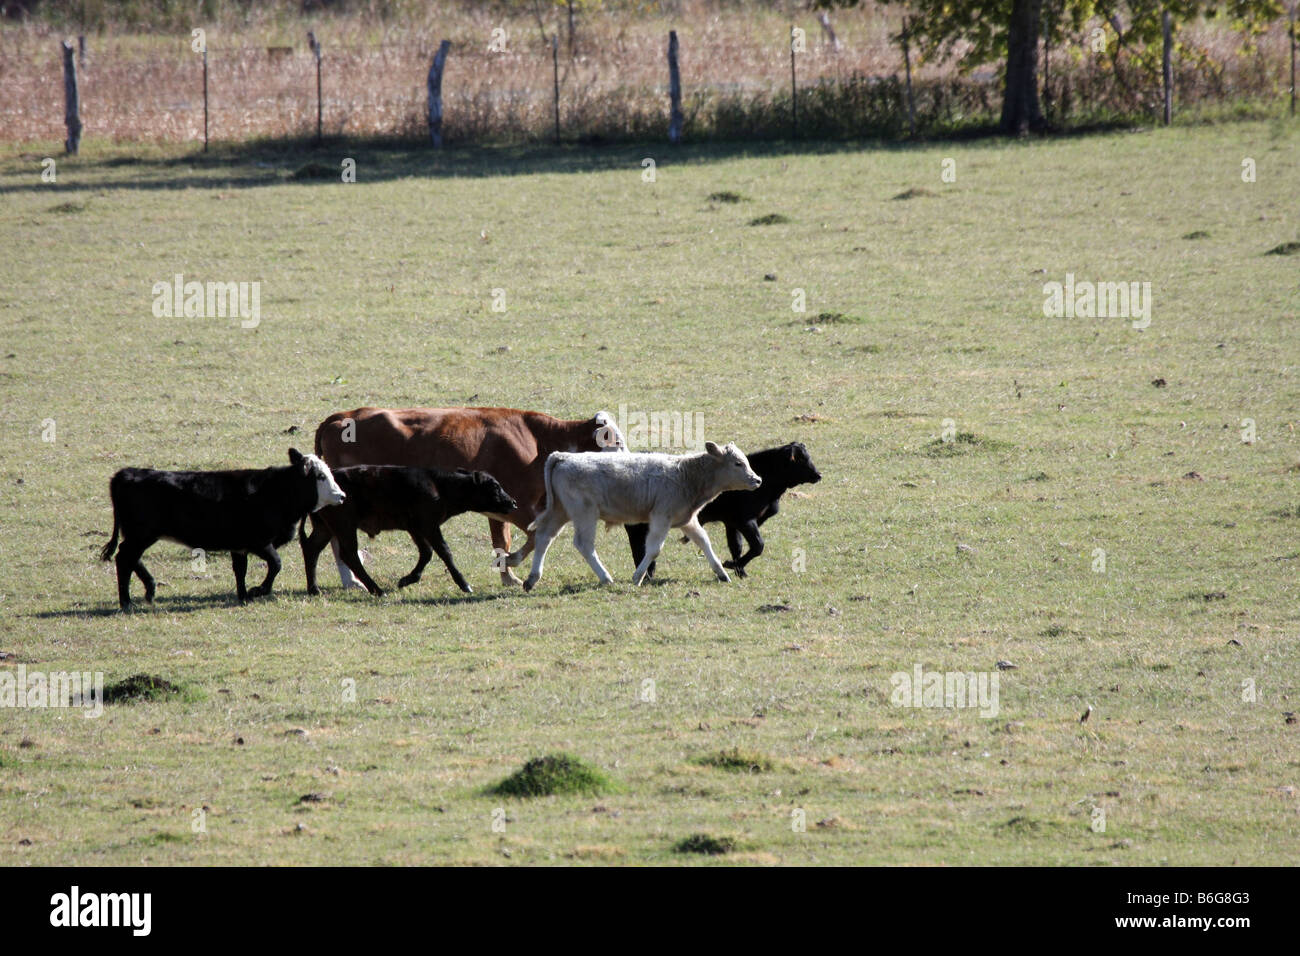 Le bétail s'exécutant dans un pâturage Texan Banque D'Images